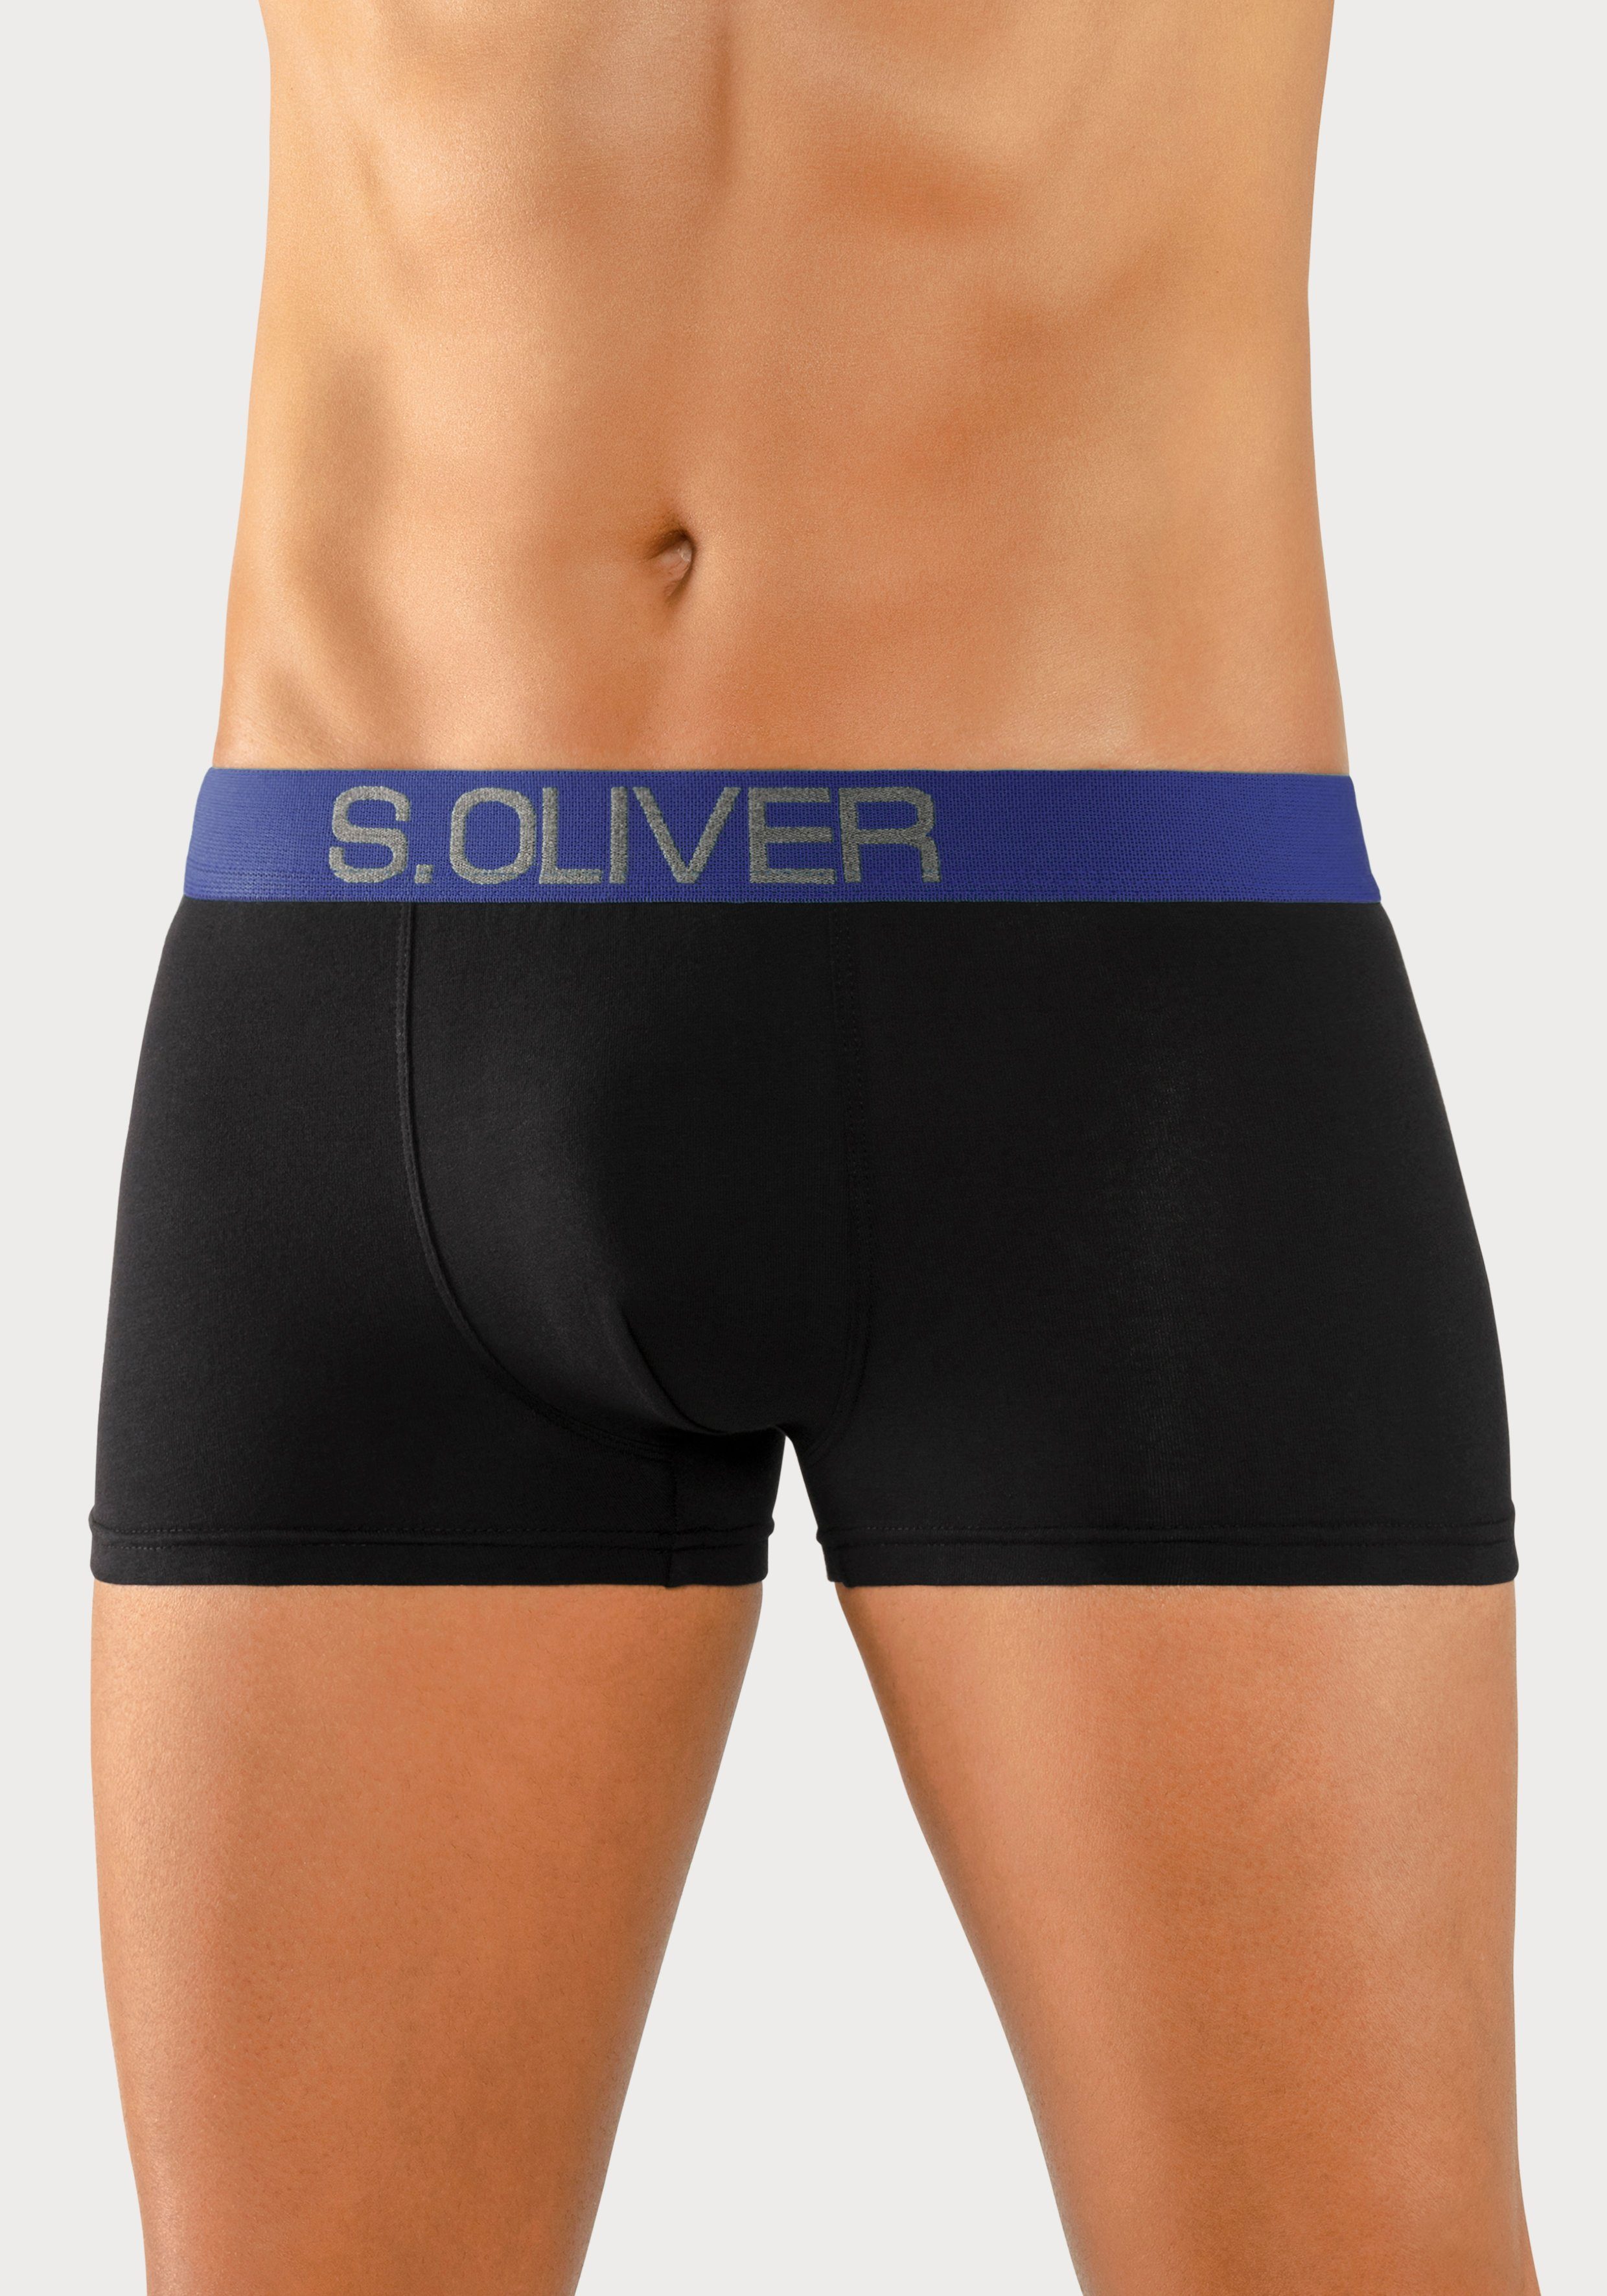 s.Oliver Boxershorts (Packung, 4-St) in kontrastfarbenem Webbund Hipster-Form schwarz-hellblau, schwarz-royalblau mit schwarz-marine, schwarz-türkis